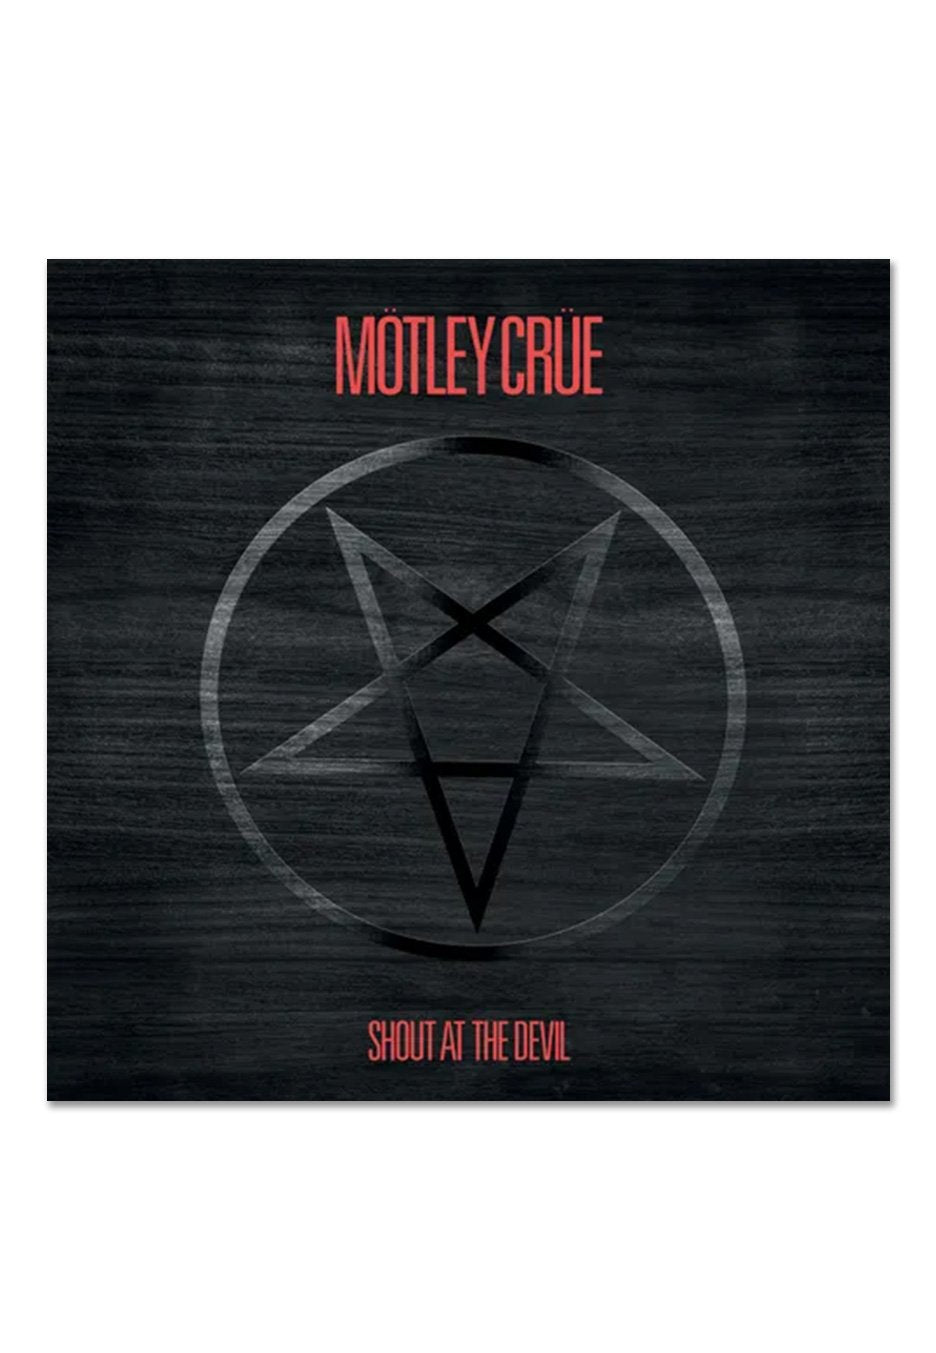 Mötley Crüe - Shout At The Devil (40th Anniversary) Ltd. LP Replica - CD